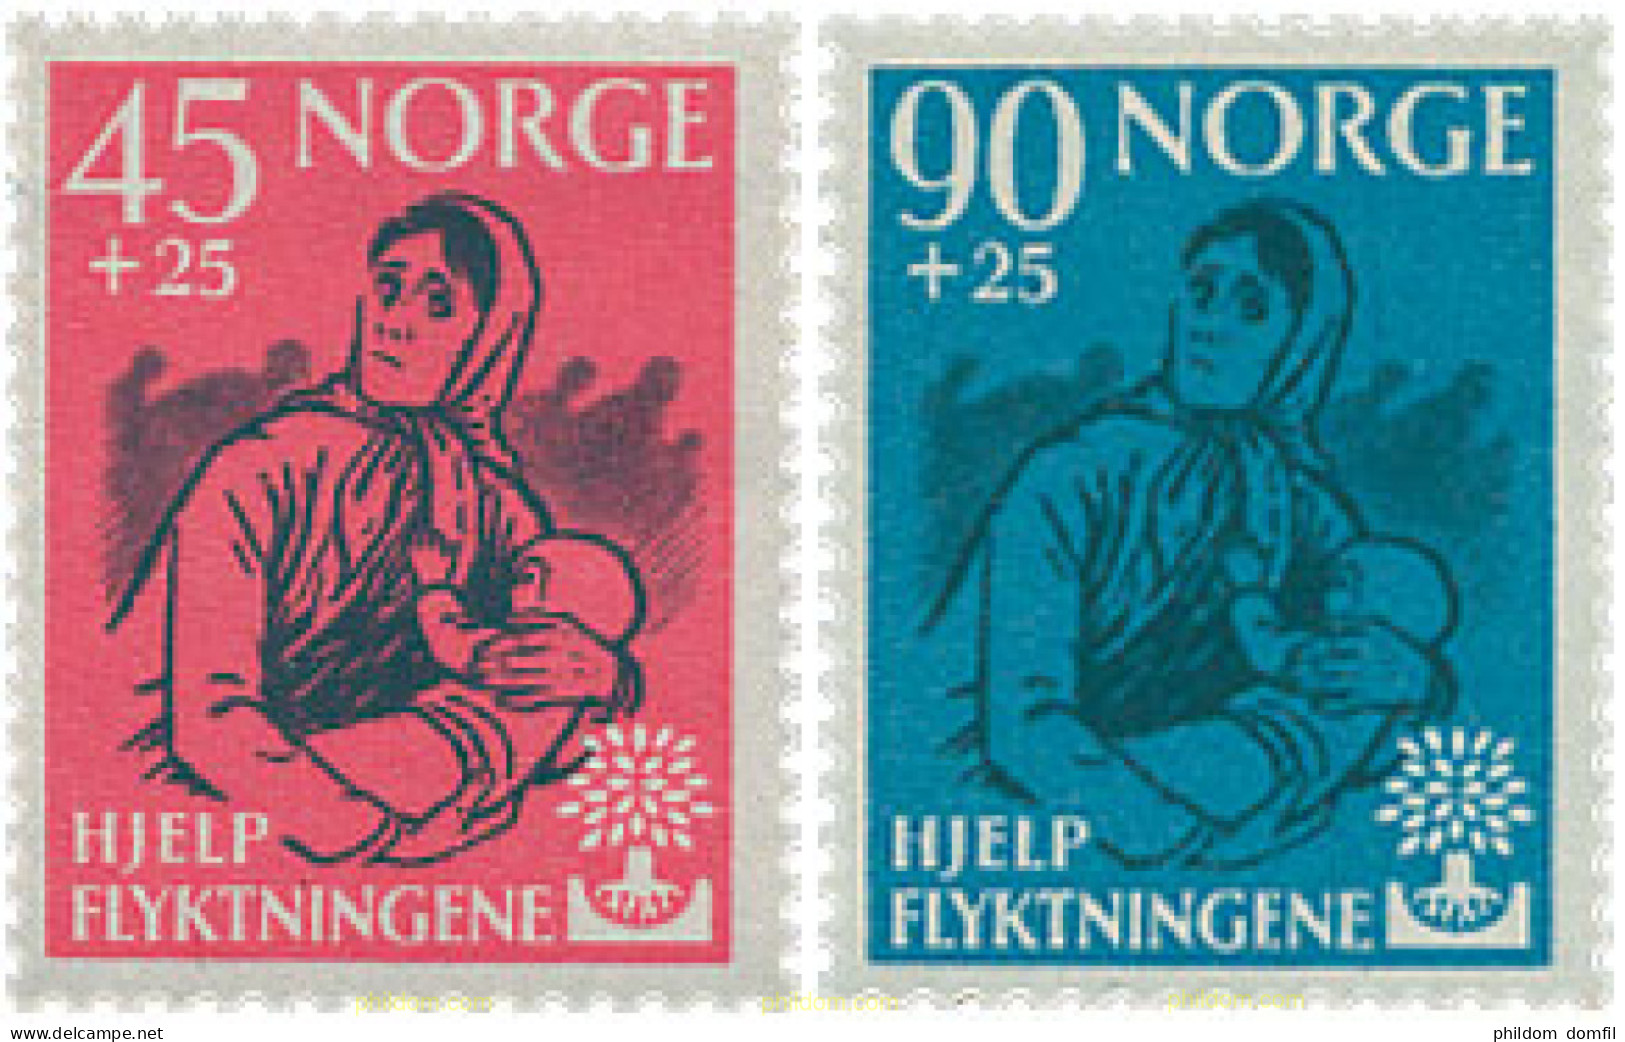 672773 HINGED NORUEGA 1960 AÑO MUNDIAL DEL REFUGIADO - Used Stamps